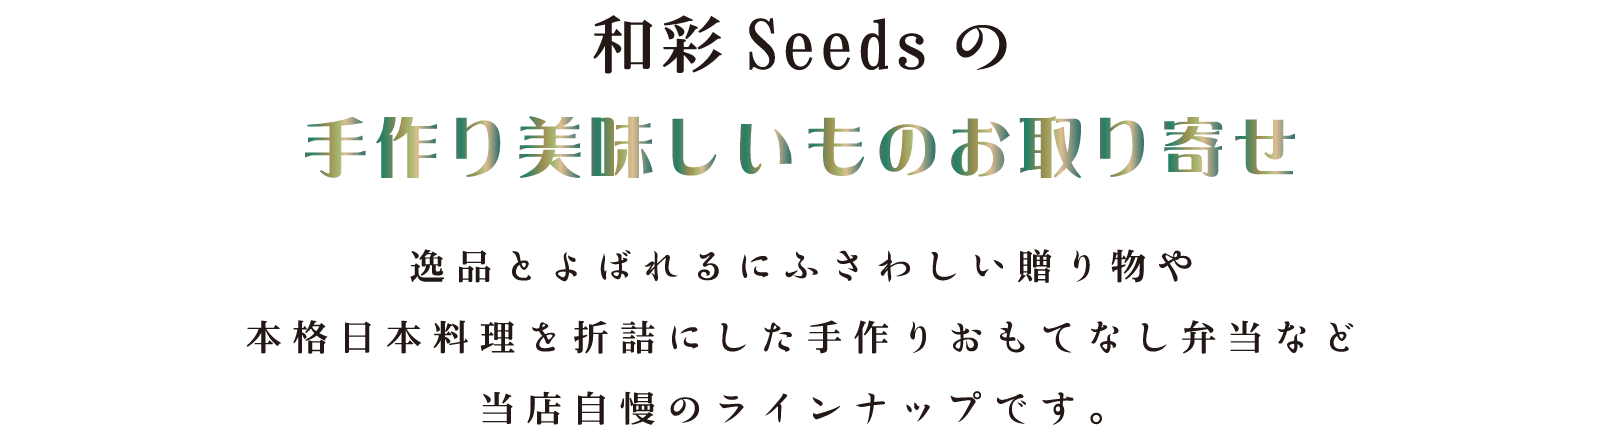 和彩Seedsの手作り美味しいものお取り寄せ／逸品とよばれるにふさわしい贈り物や本格日本料理を折詰にした手作りおもてなし弁当など当店自慢のラインナップです。